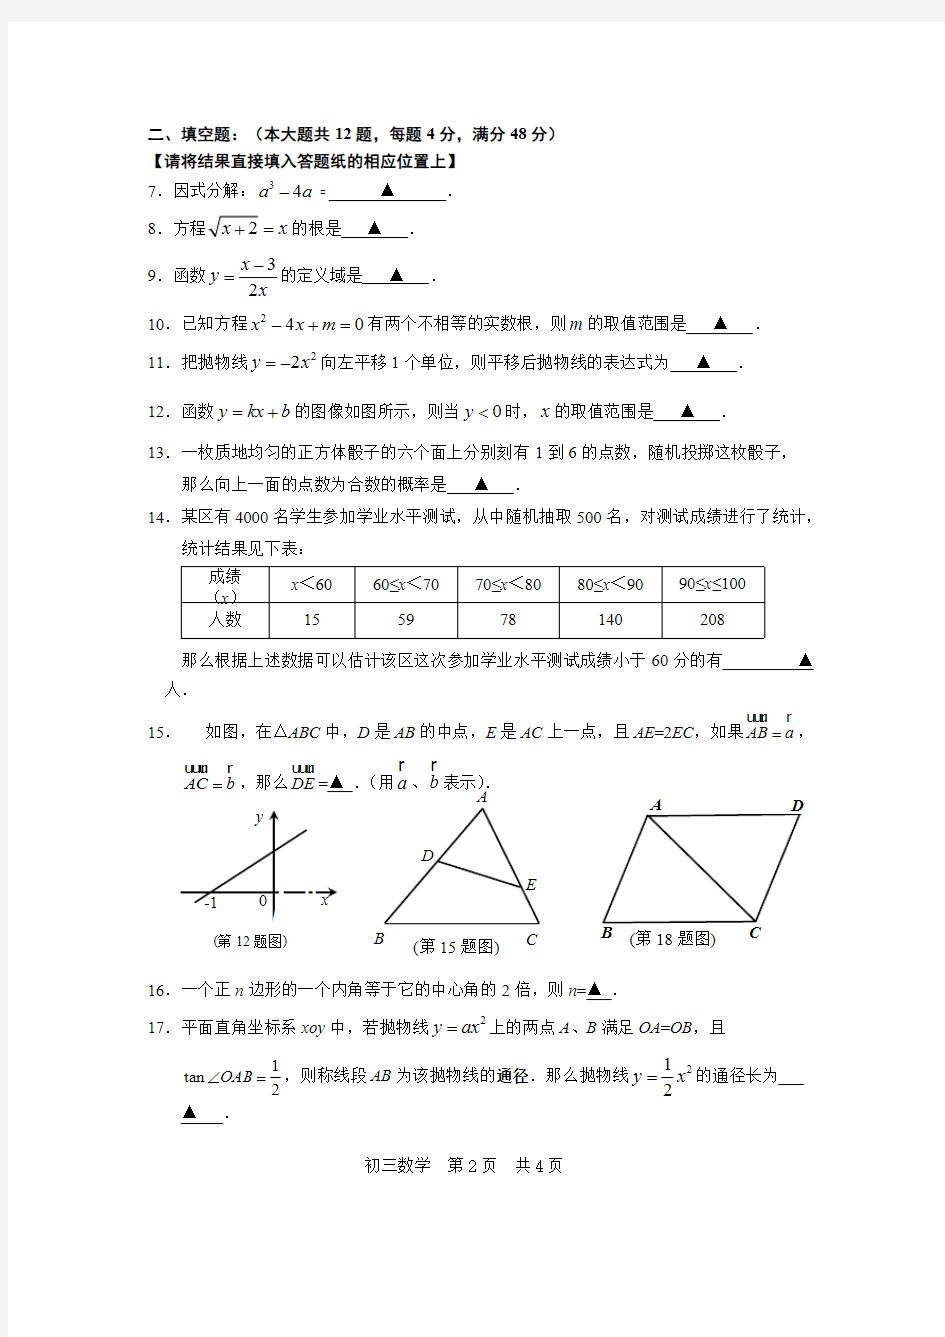 (完整版)2018年松江区初三数学二模试卷及参考答案